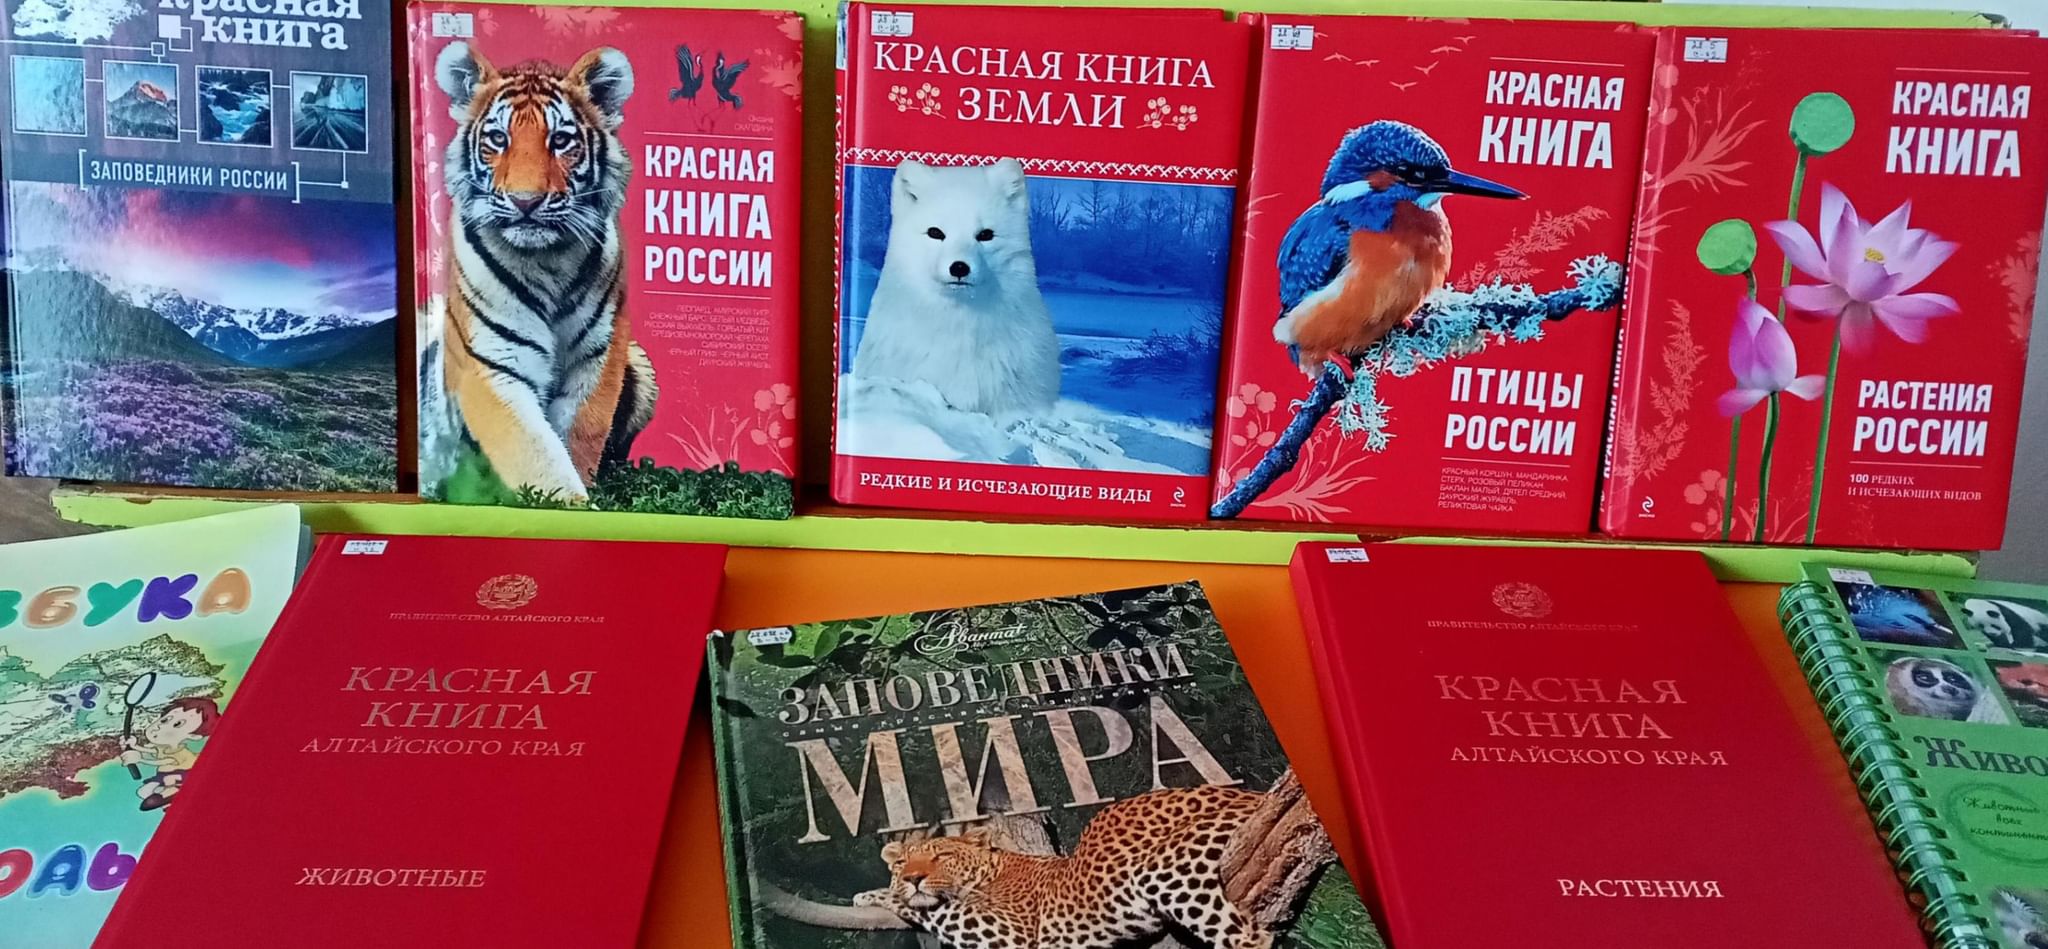 Красная книга России книга 2021